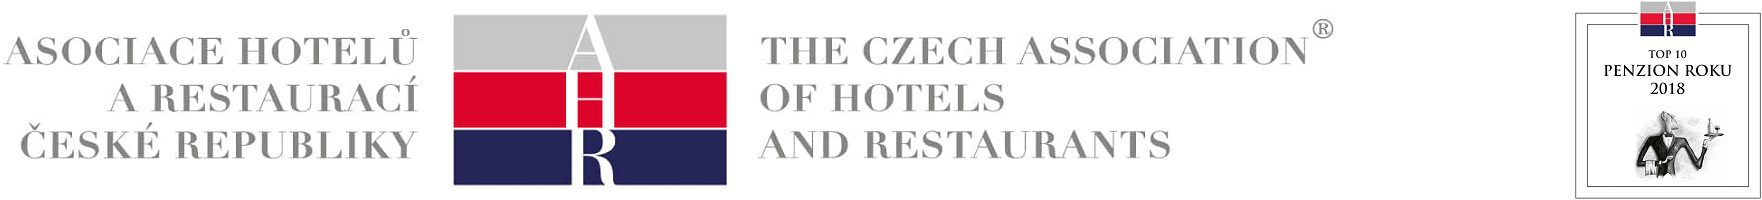 Asociace hotelů a restaurací České republiky